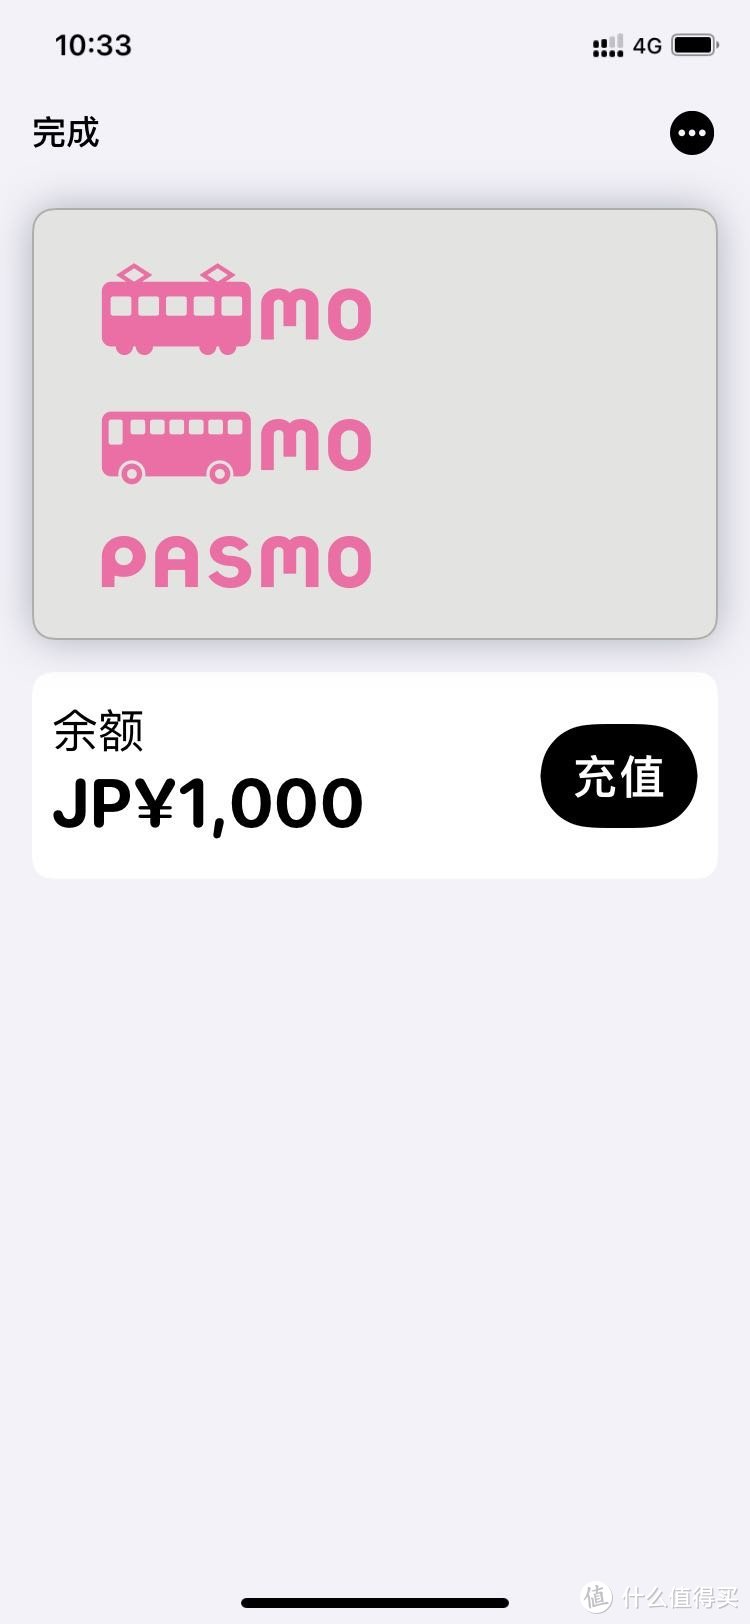 APPLE PAY已支持开通PASMO卡，可银联直接充值